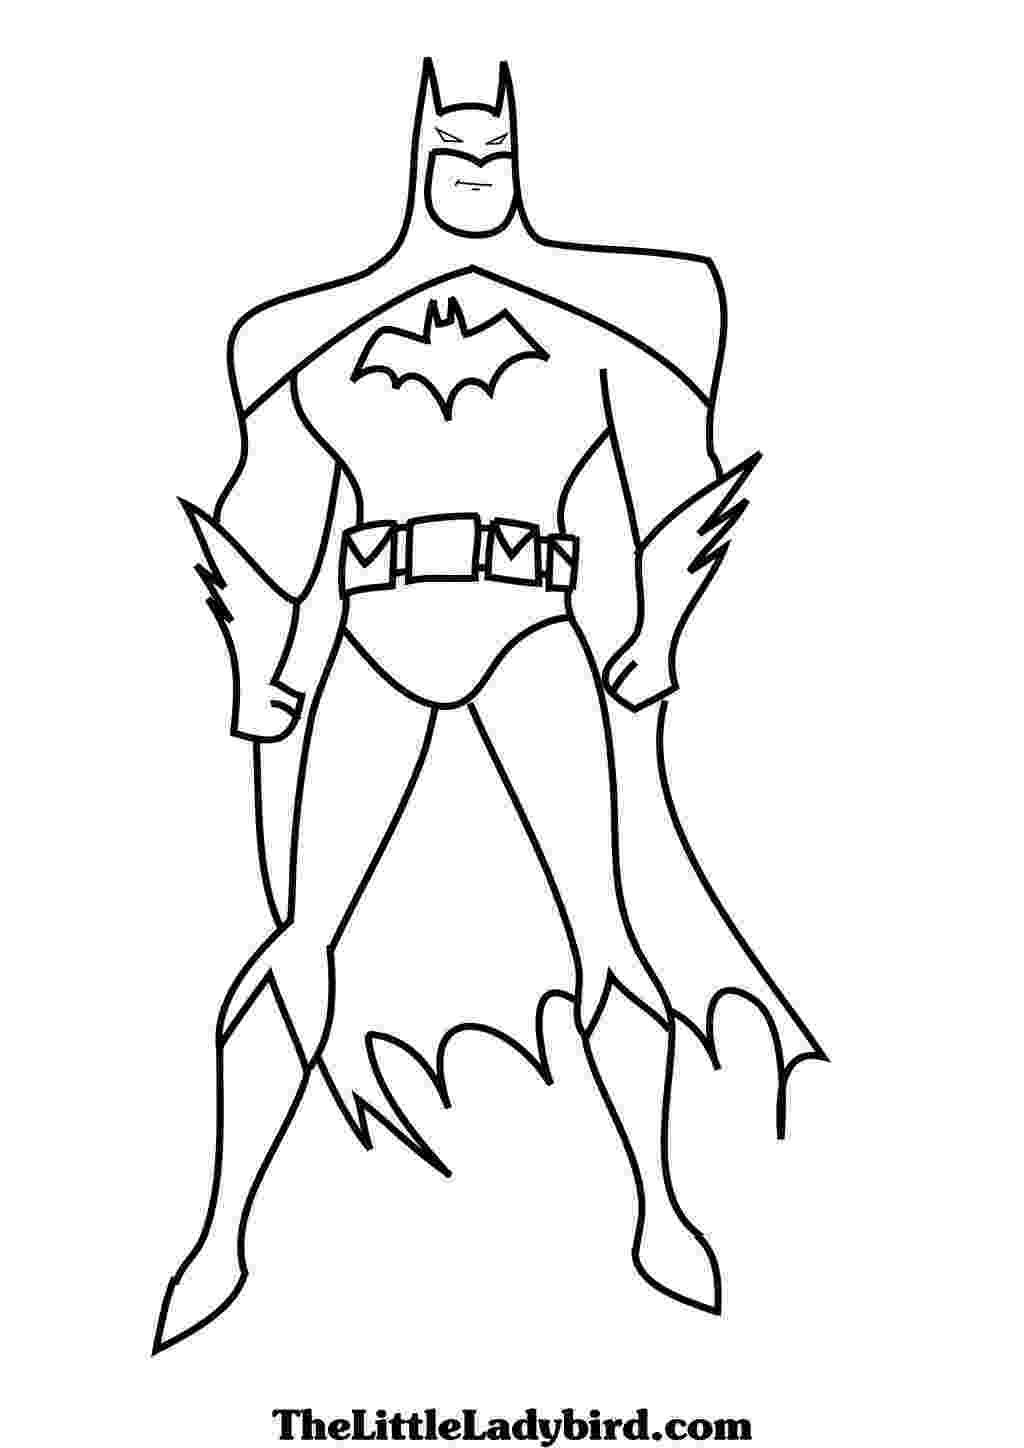 coloring sheet batman kids n funcom 72 coloring pages of batman sheet batman coloring 